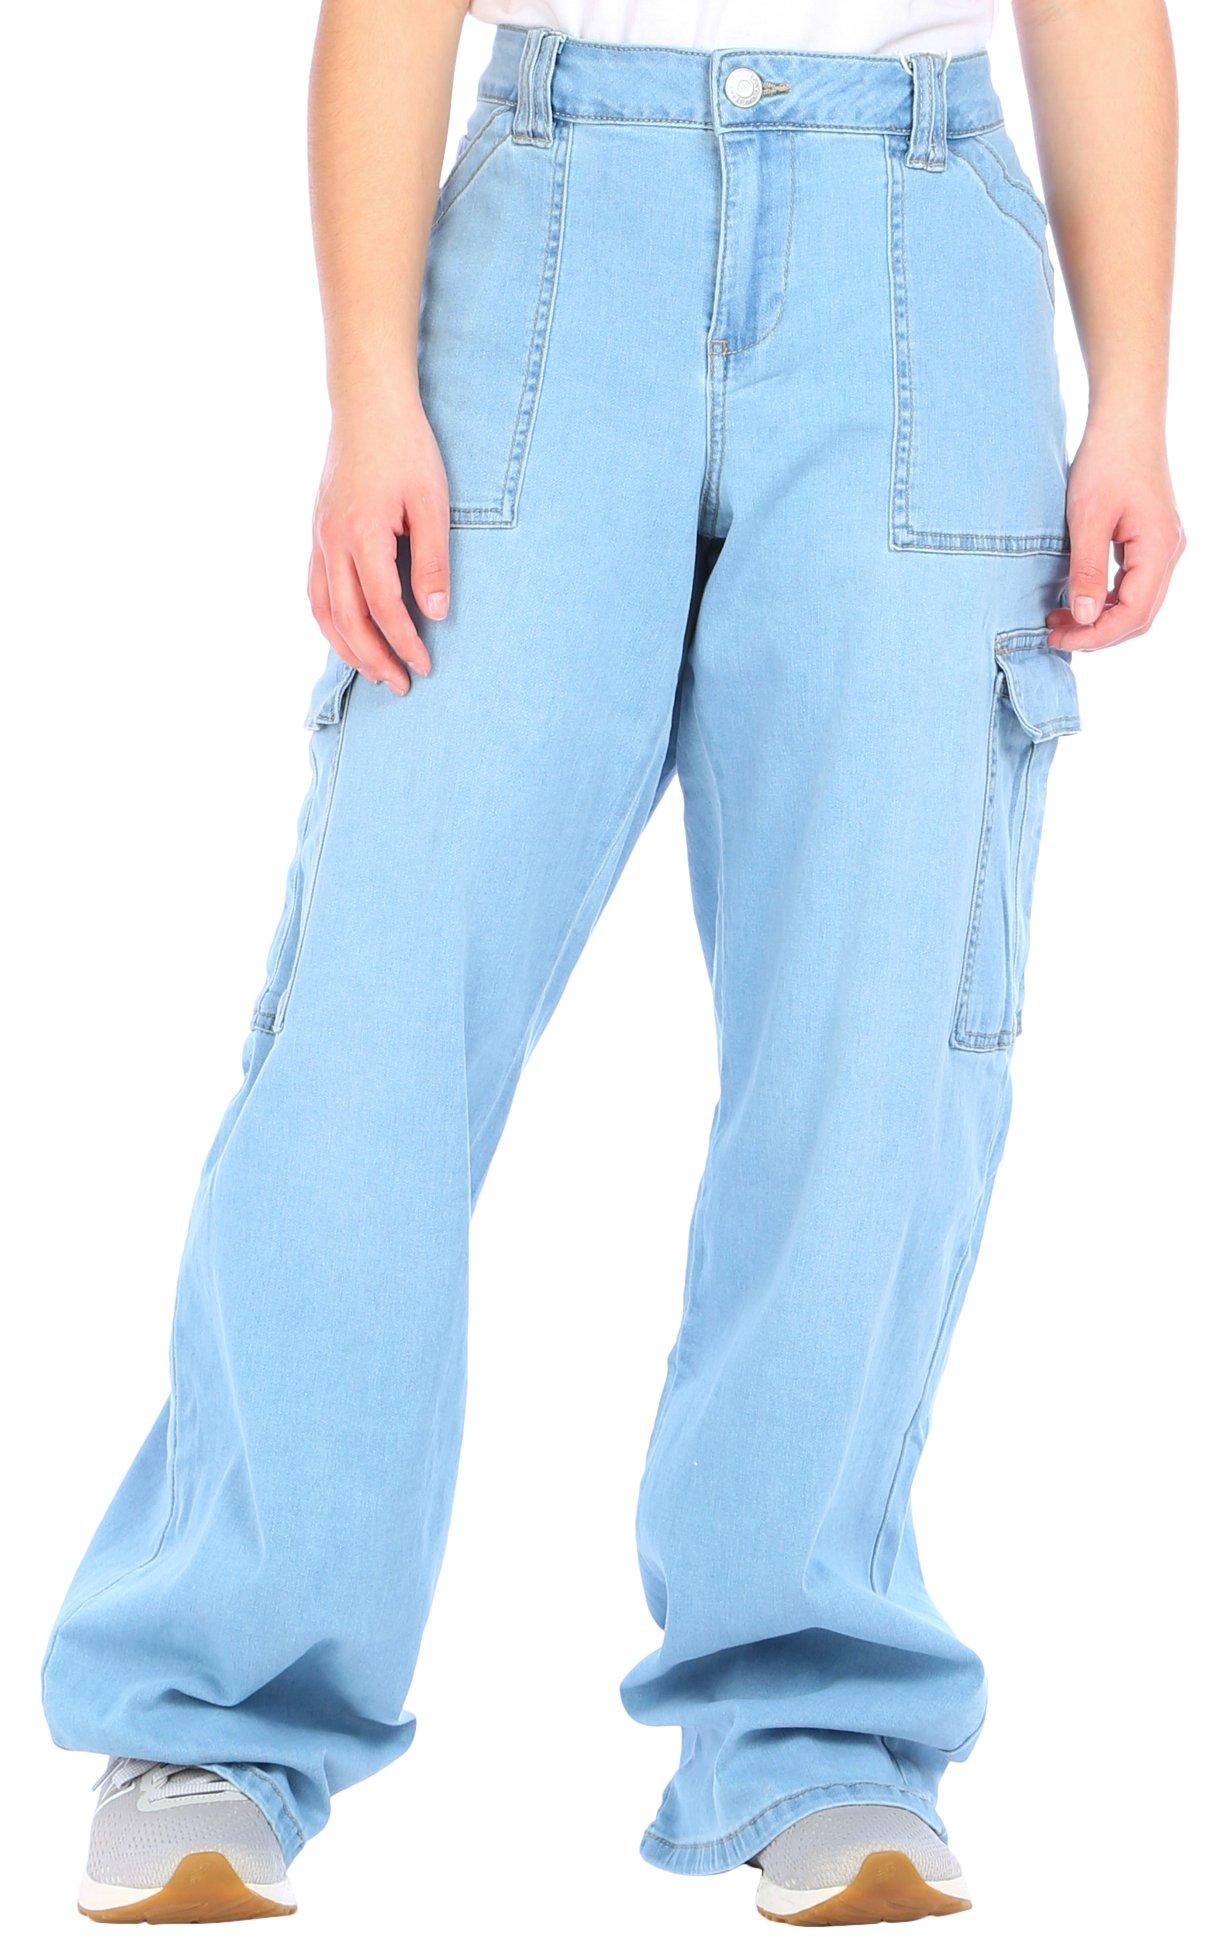 BDG 100% Cotton Solid Blue Denim Shorts 30 Waist - 57% off